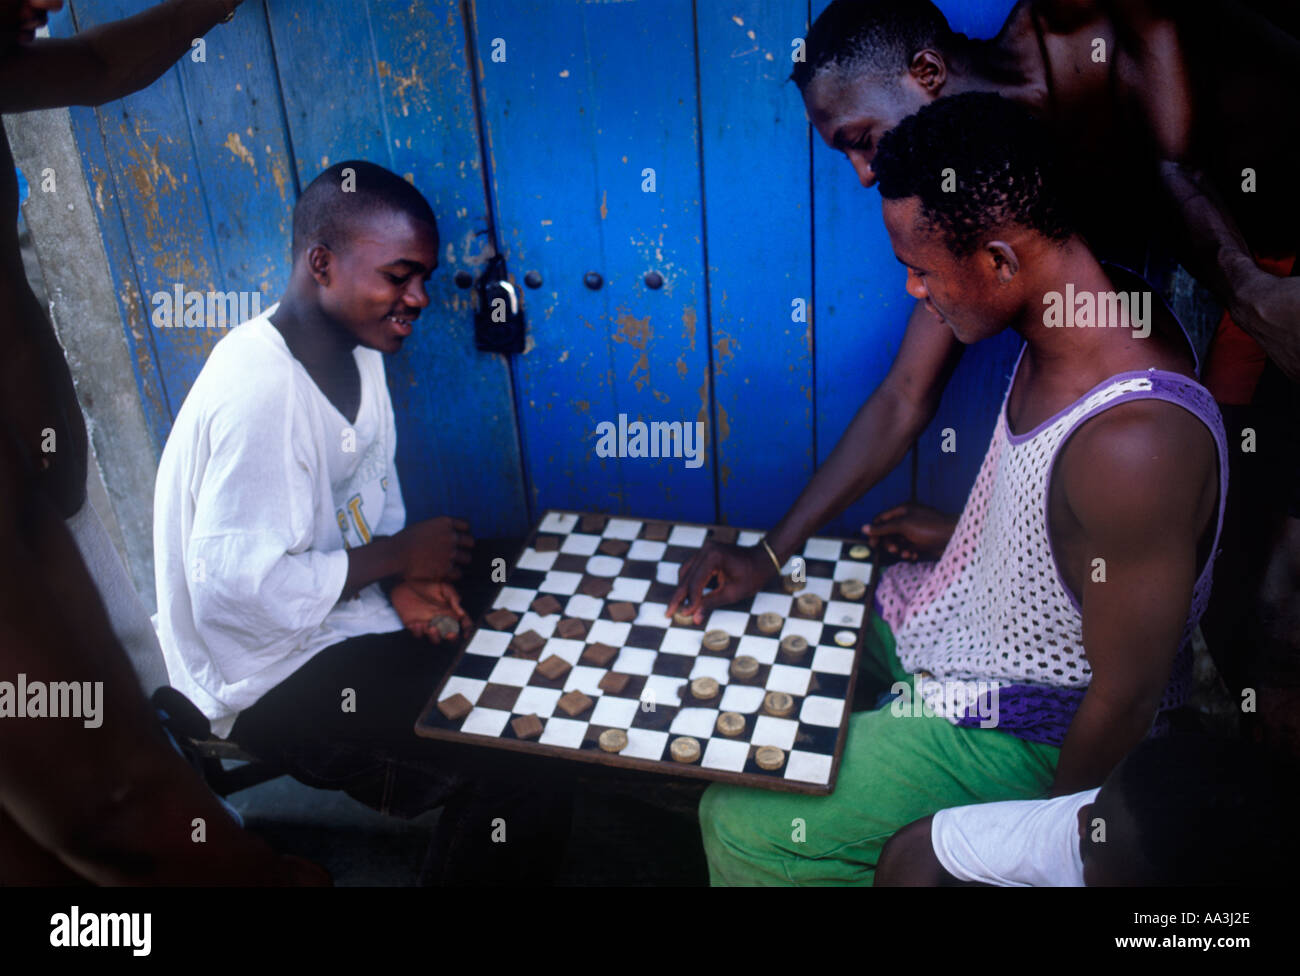 Un spectateur fait sa contribution à un jeu de dames jeu de dames dans une rue d'Accra, au Ghana, Afrique de l'Ouest Banque D'Images